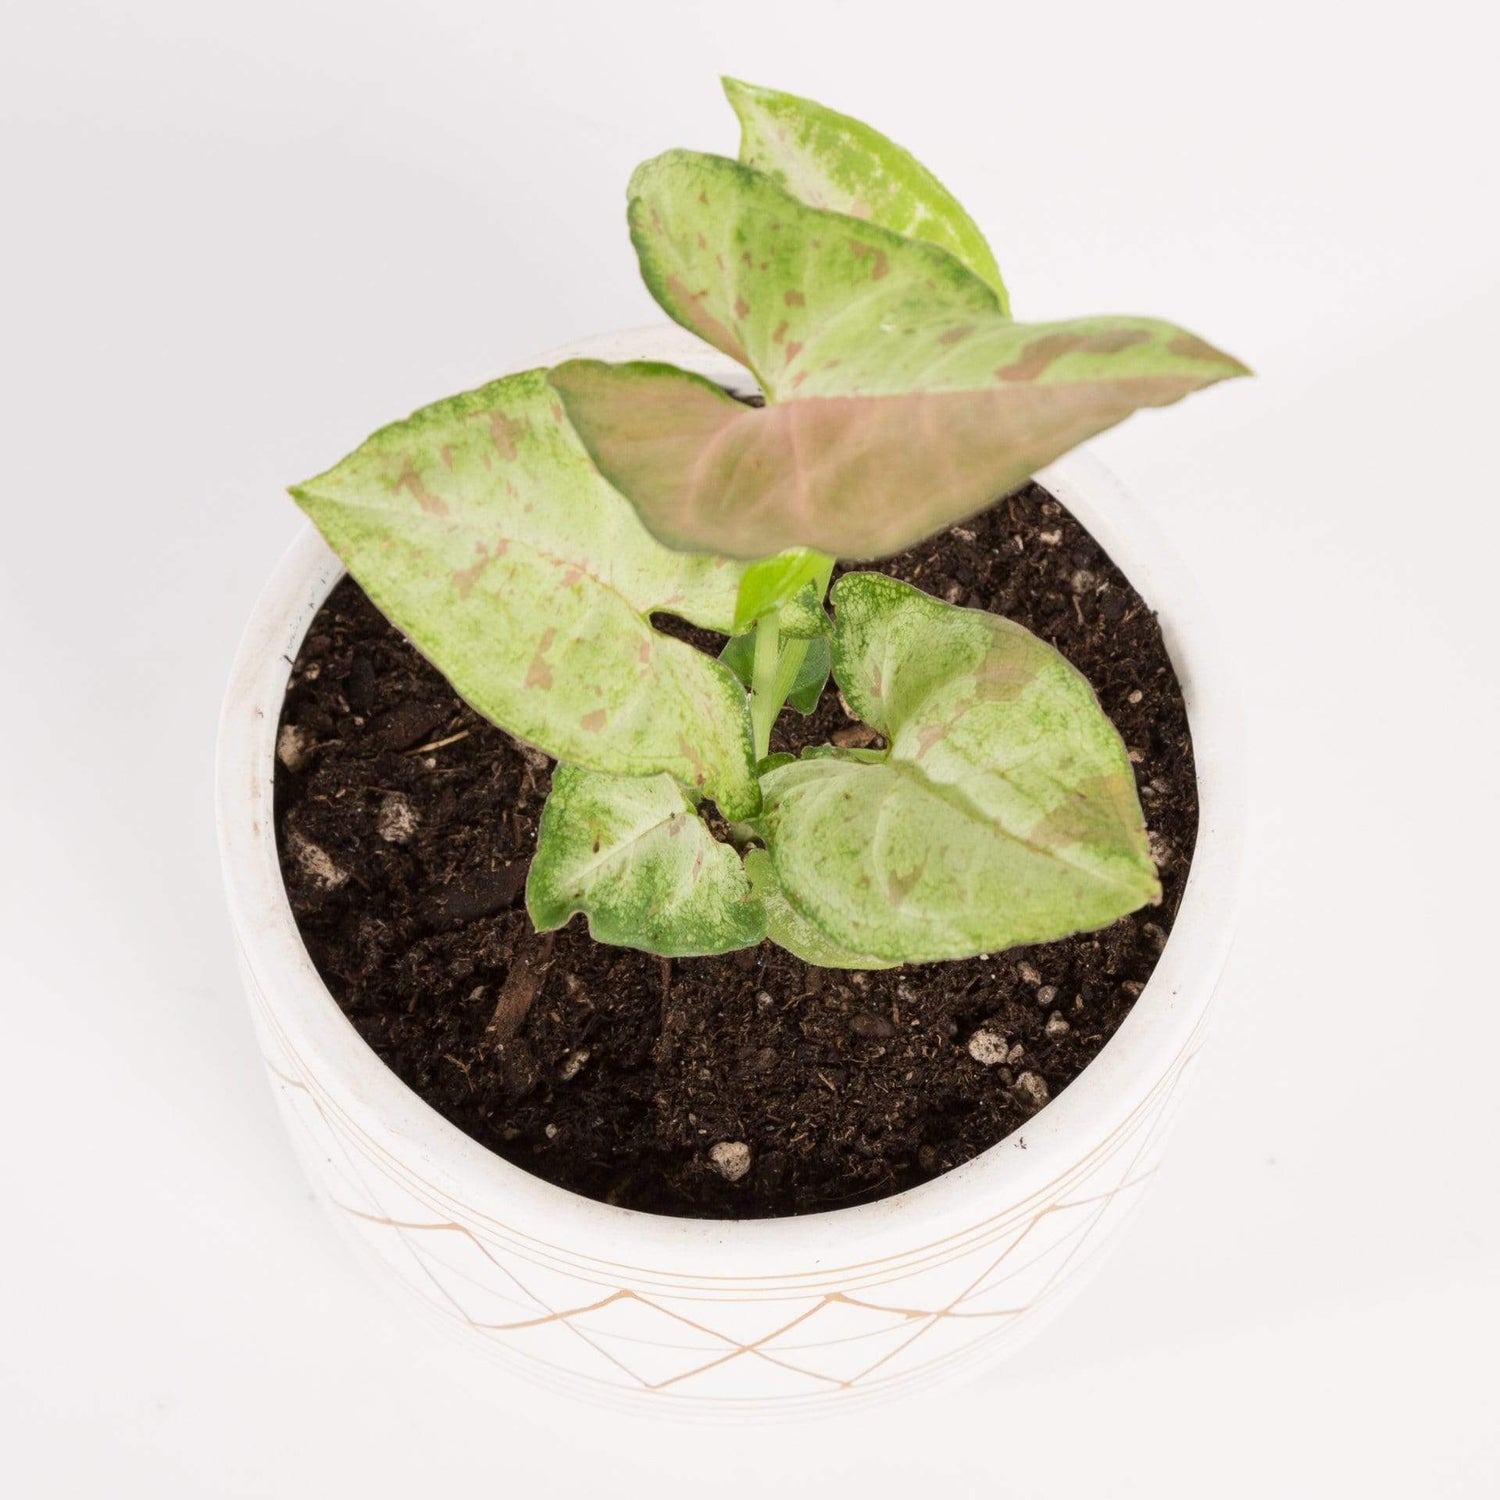 Urban Sprouts Plant 4" in nursery pot Arrowhead Vine 'Confetti'